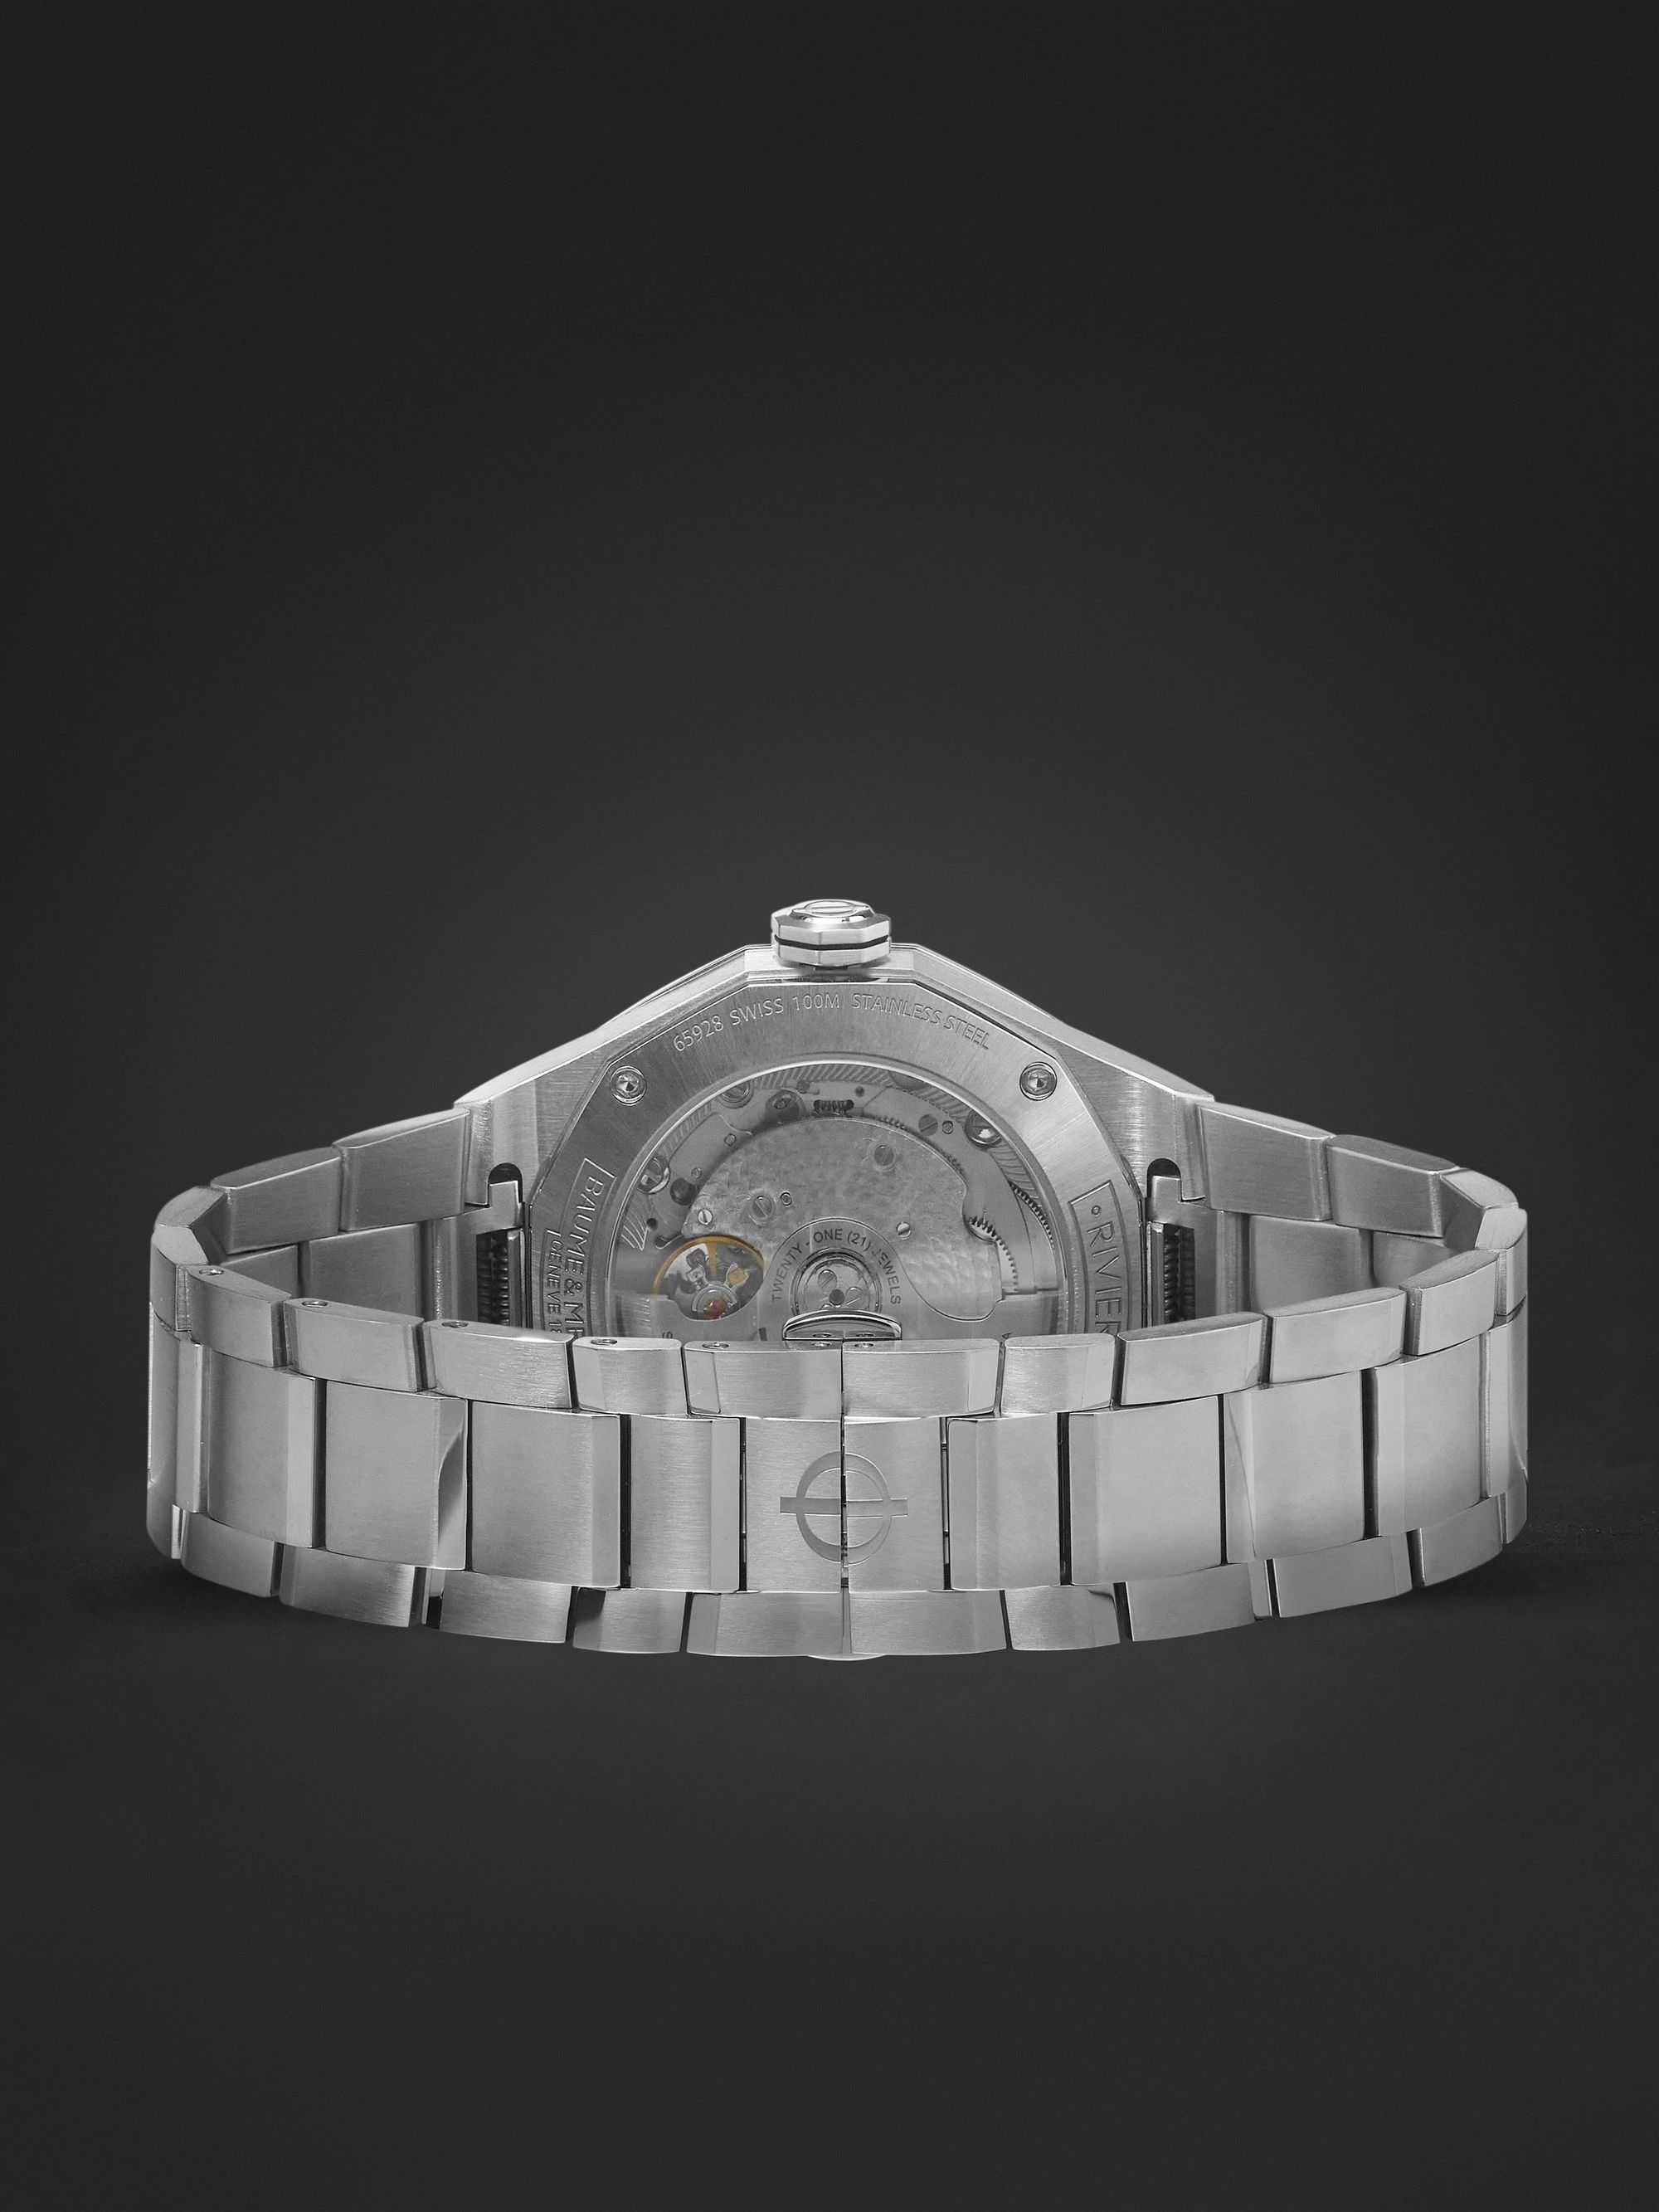 BAUME & MERCIER ساعة Riviera الأوتوماتيكية من الفولاذ المقاوم للصدأ بقطر 39 مم، الرقم المرجعي 10715